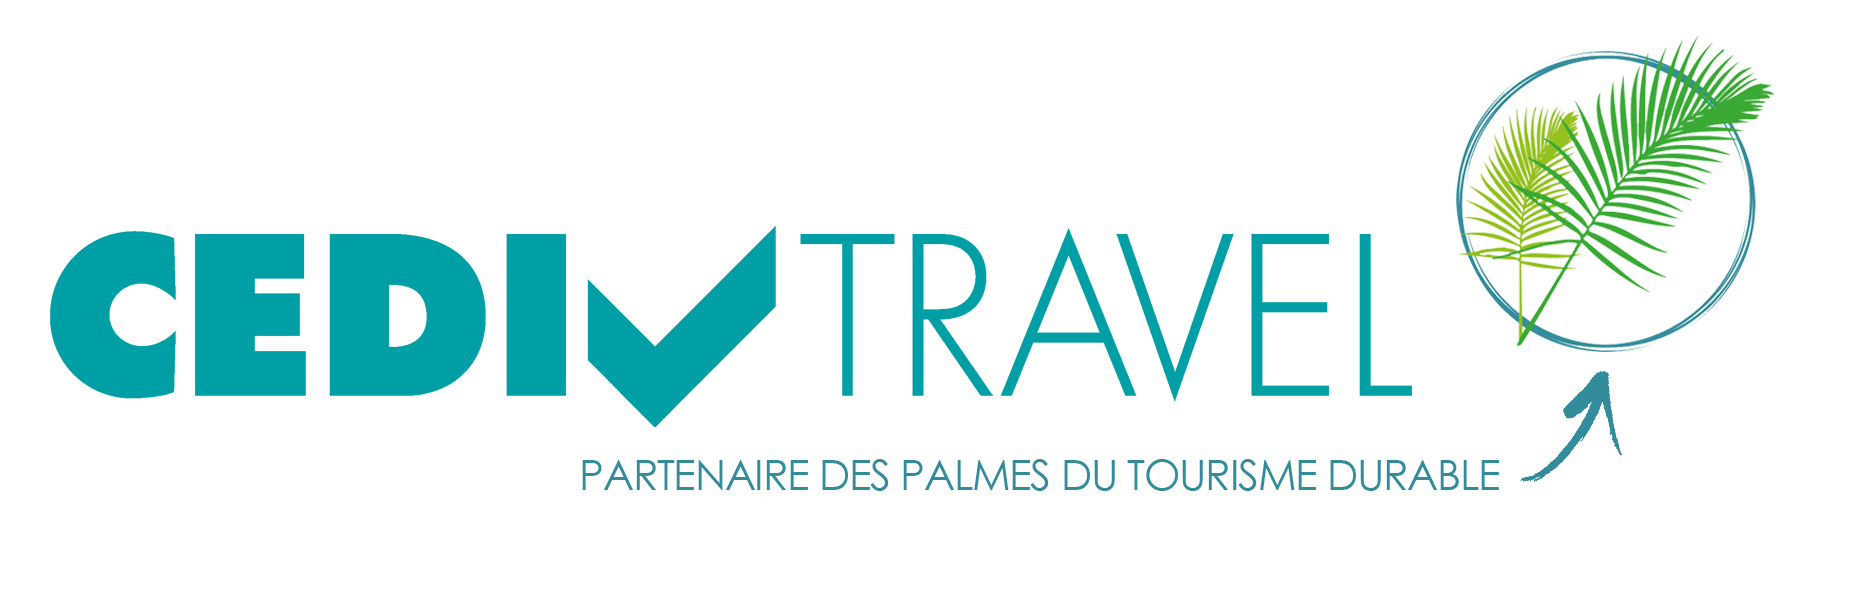 Logo_cediv_Palmes-du-tourisme-1.png